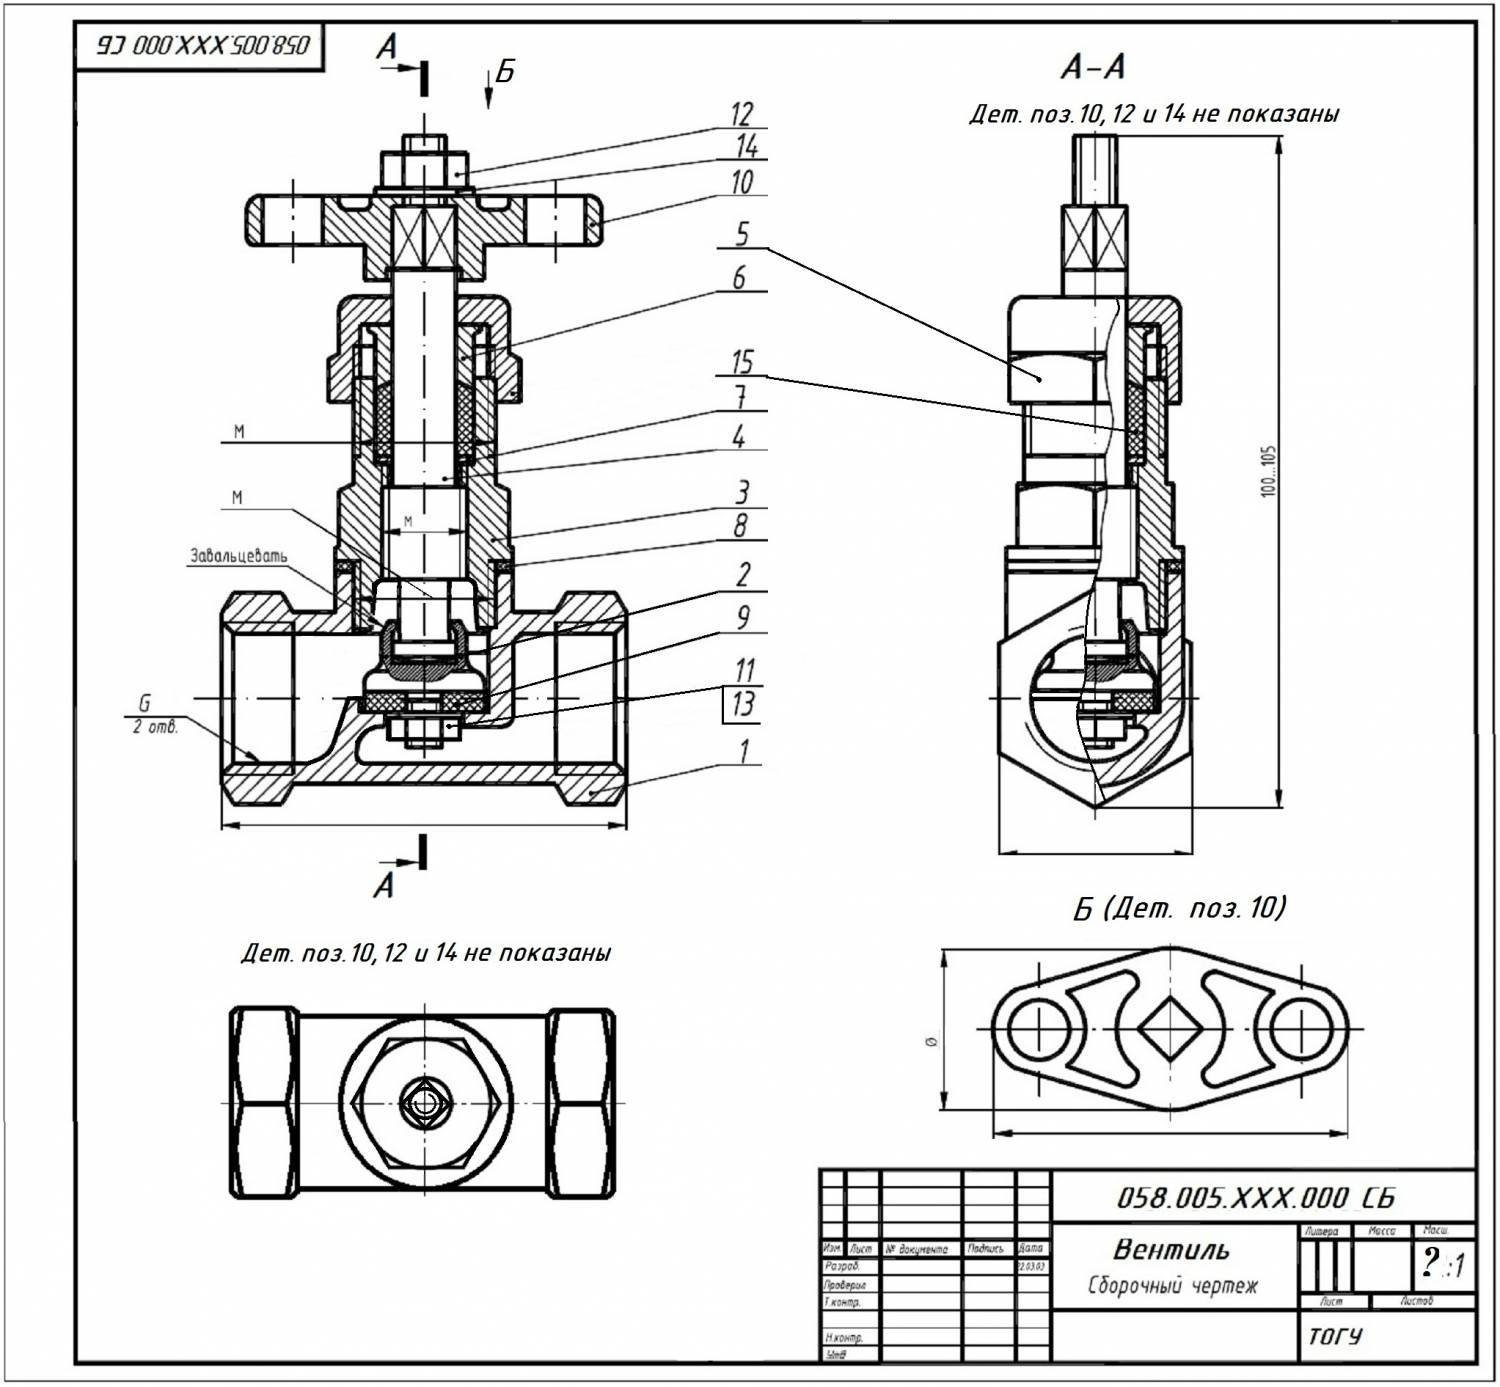 Вентиль водопроводный: устройство, чертеж, технические характеристики